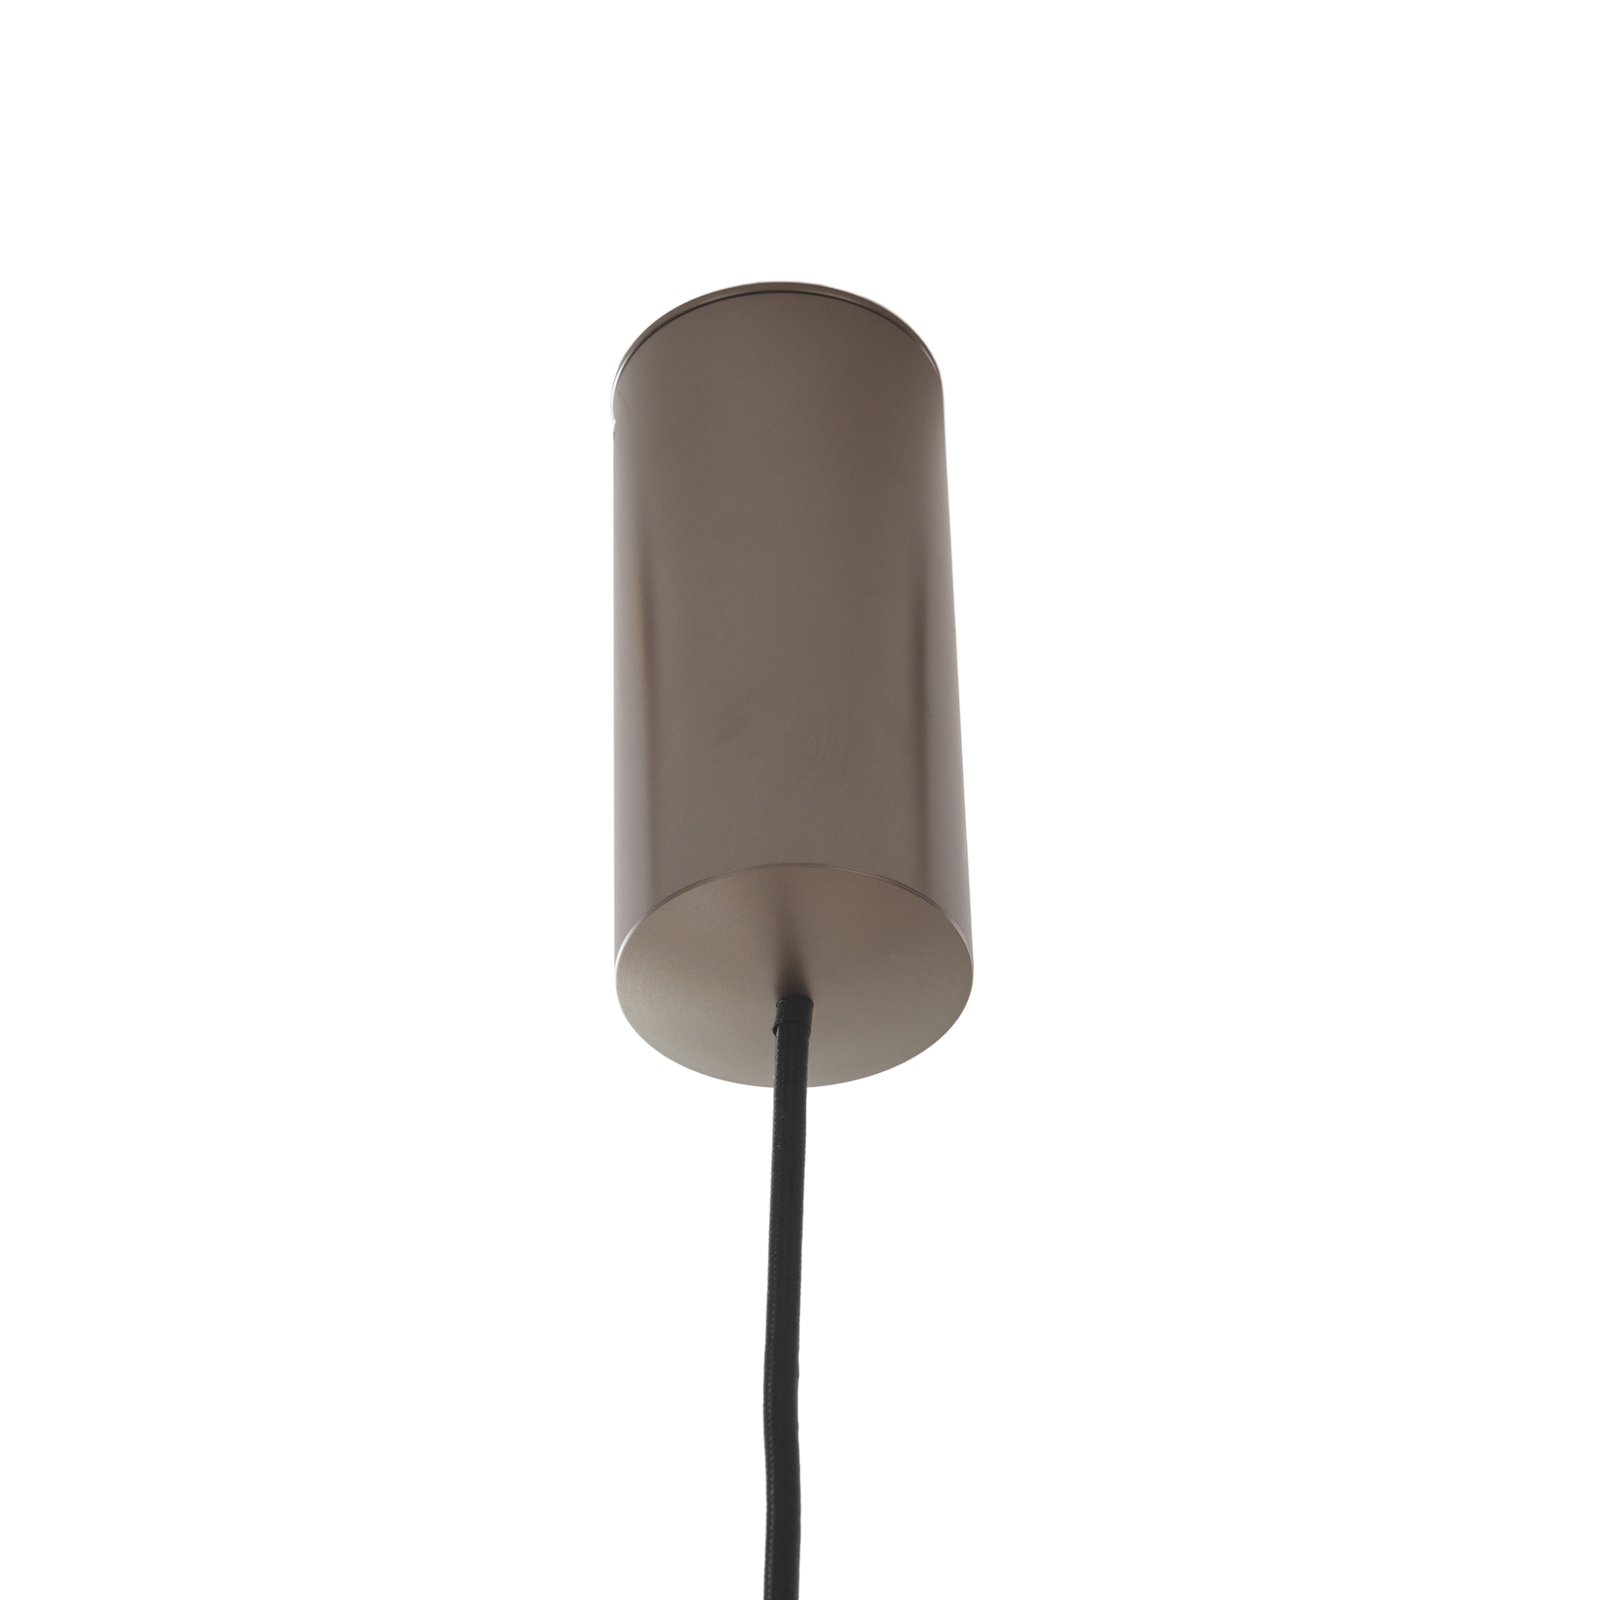 Lucande LED-Hängeleuchte Plarion, nickelfarben, Alu, Ø 9 cm